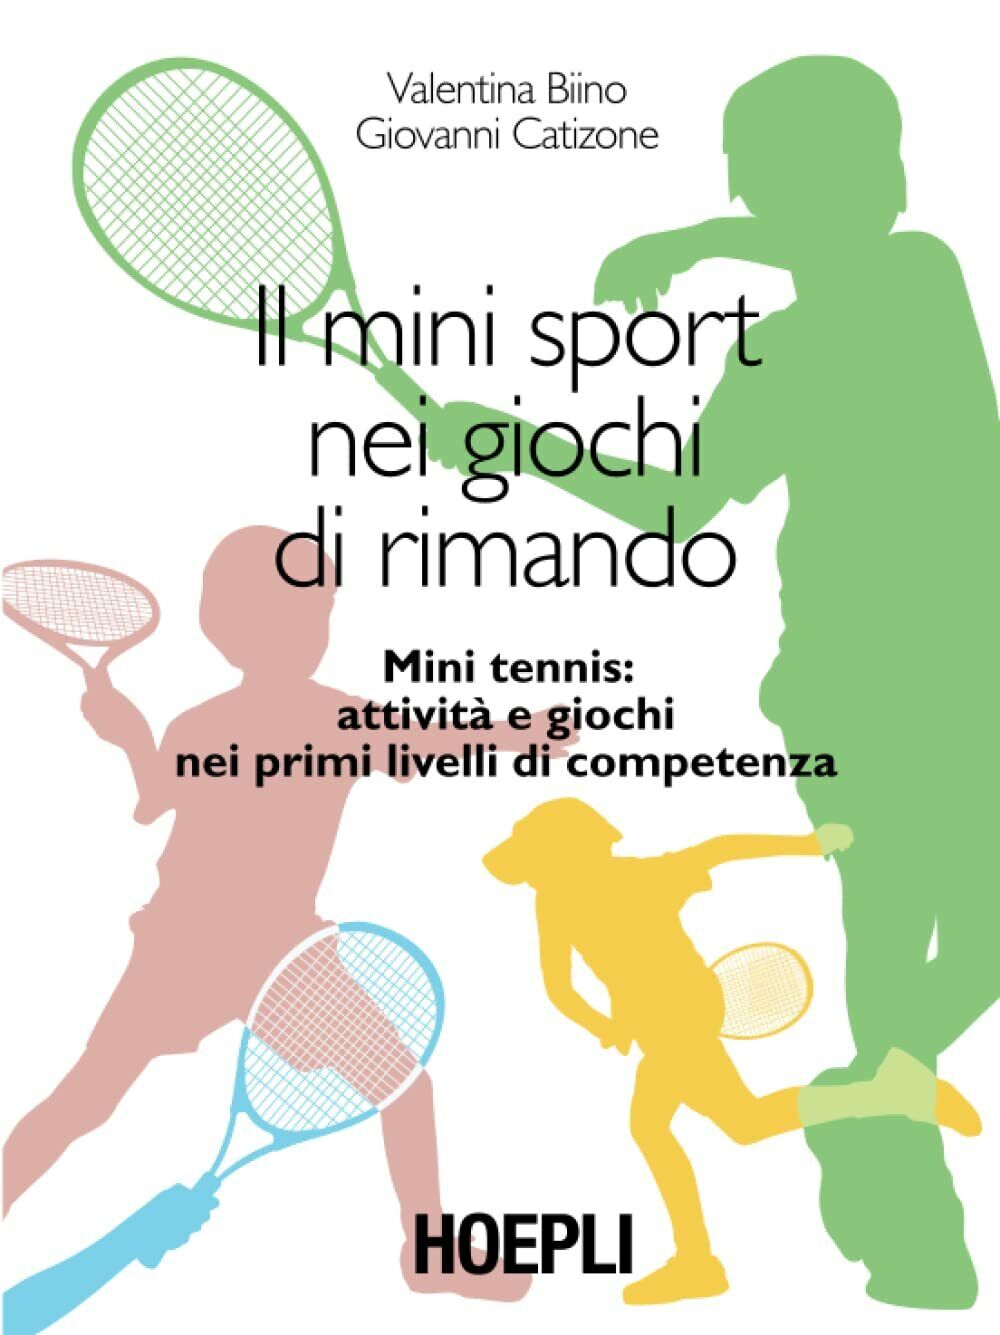 Il minisport nei giochi di rimando - Valentina Biino, Giovanni Catizone - 2014 libro usato